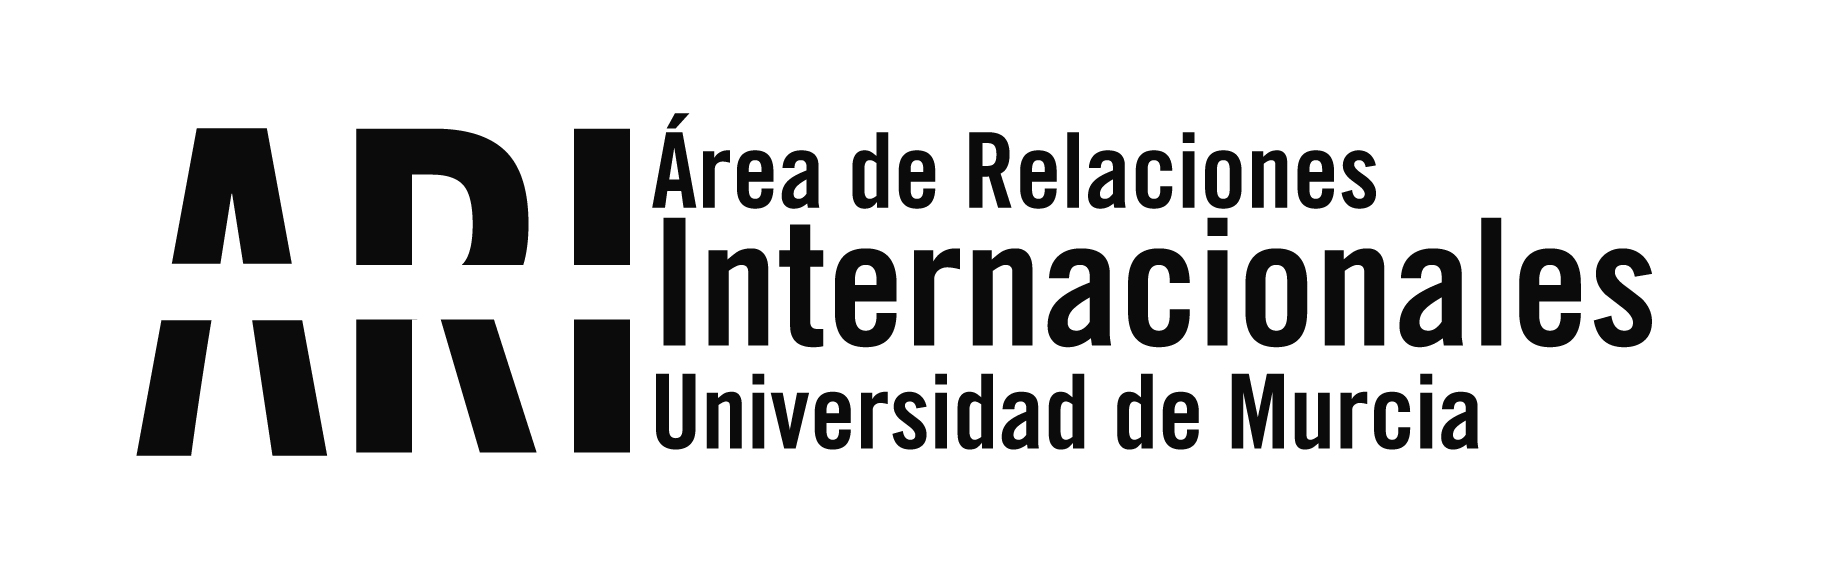 Bienvenida Universidad de Murcia Internacional - Área de Relaciones Internacionales